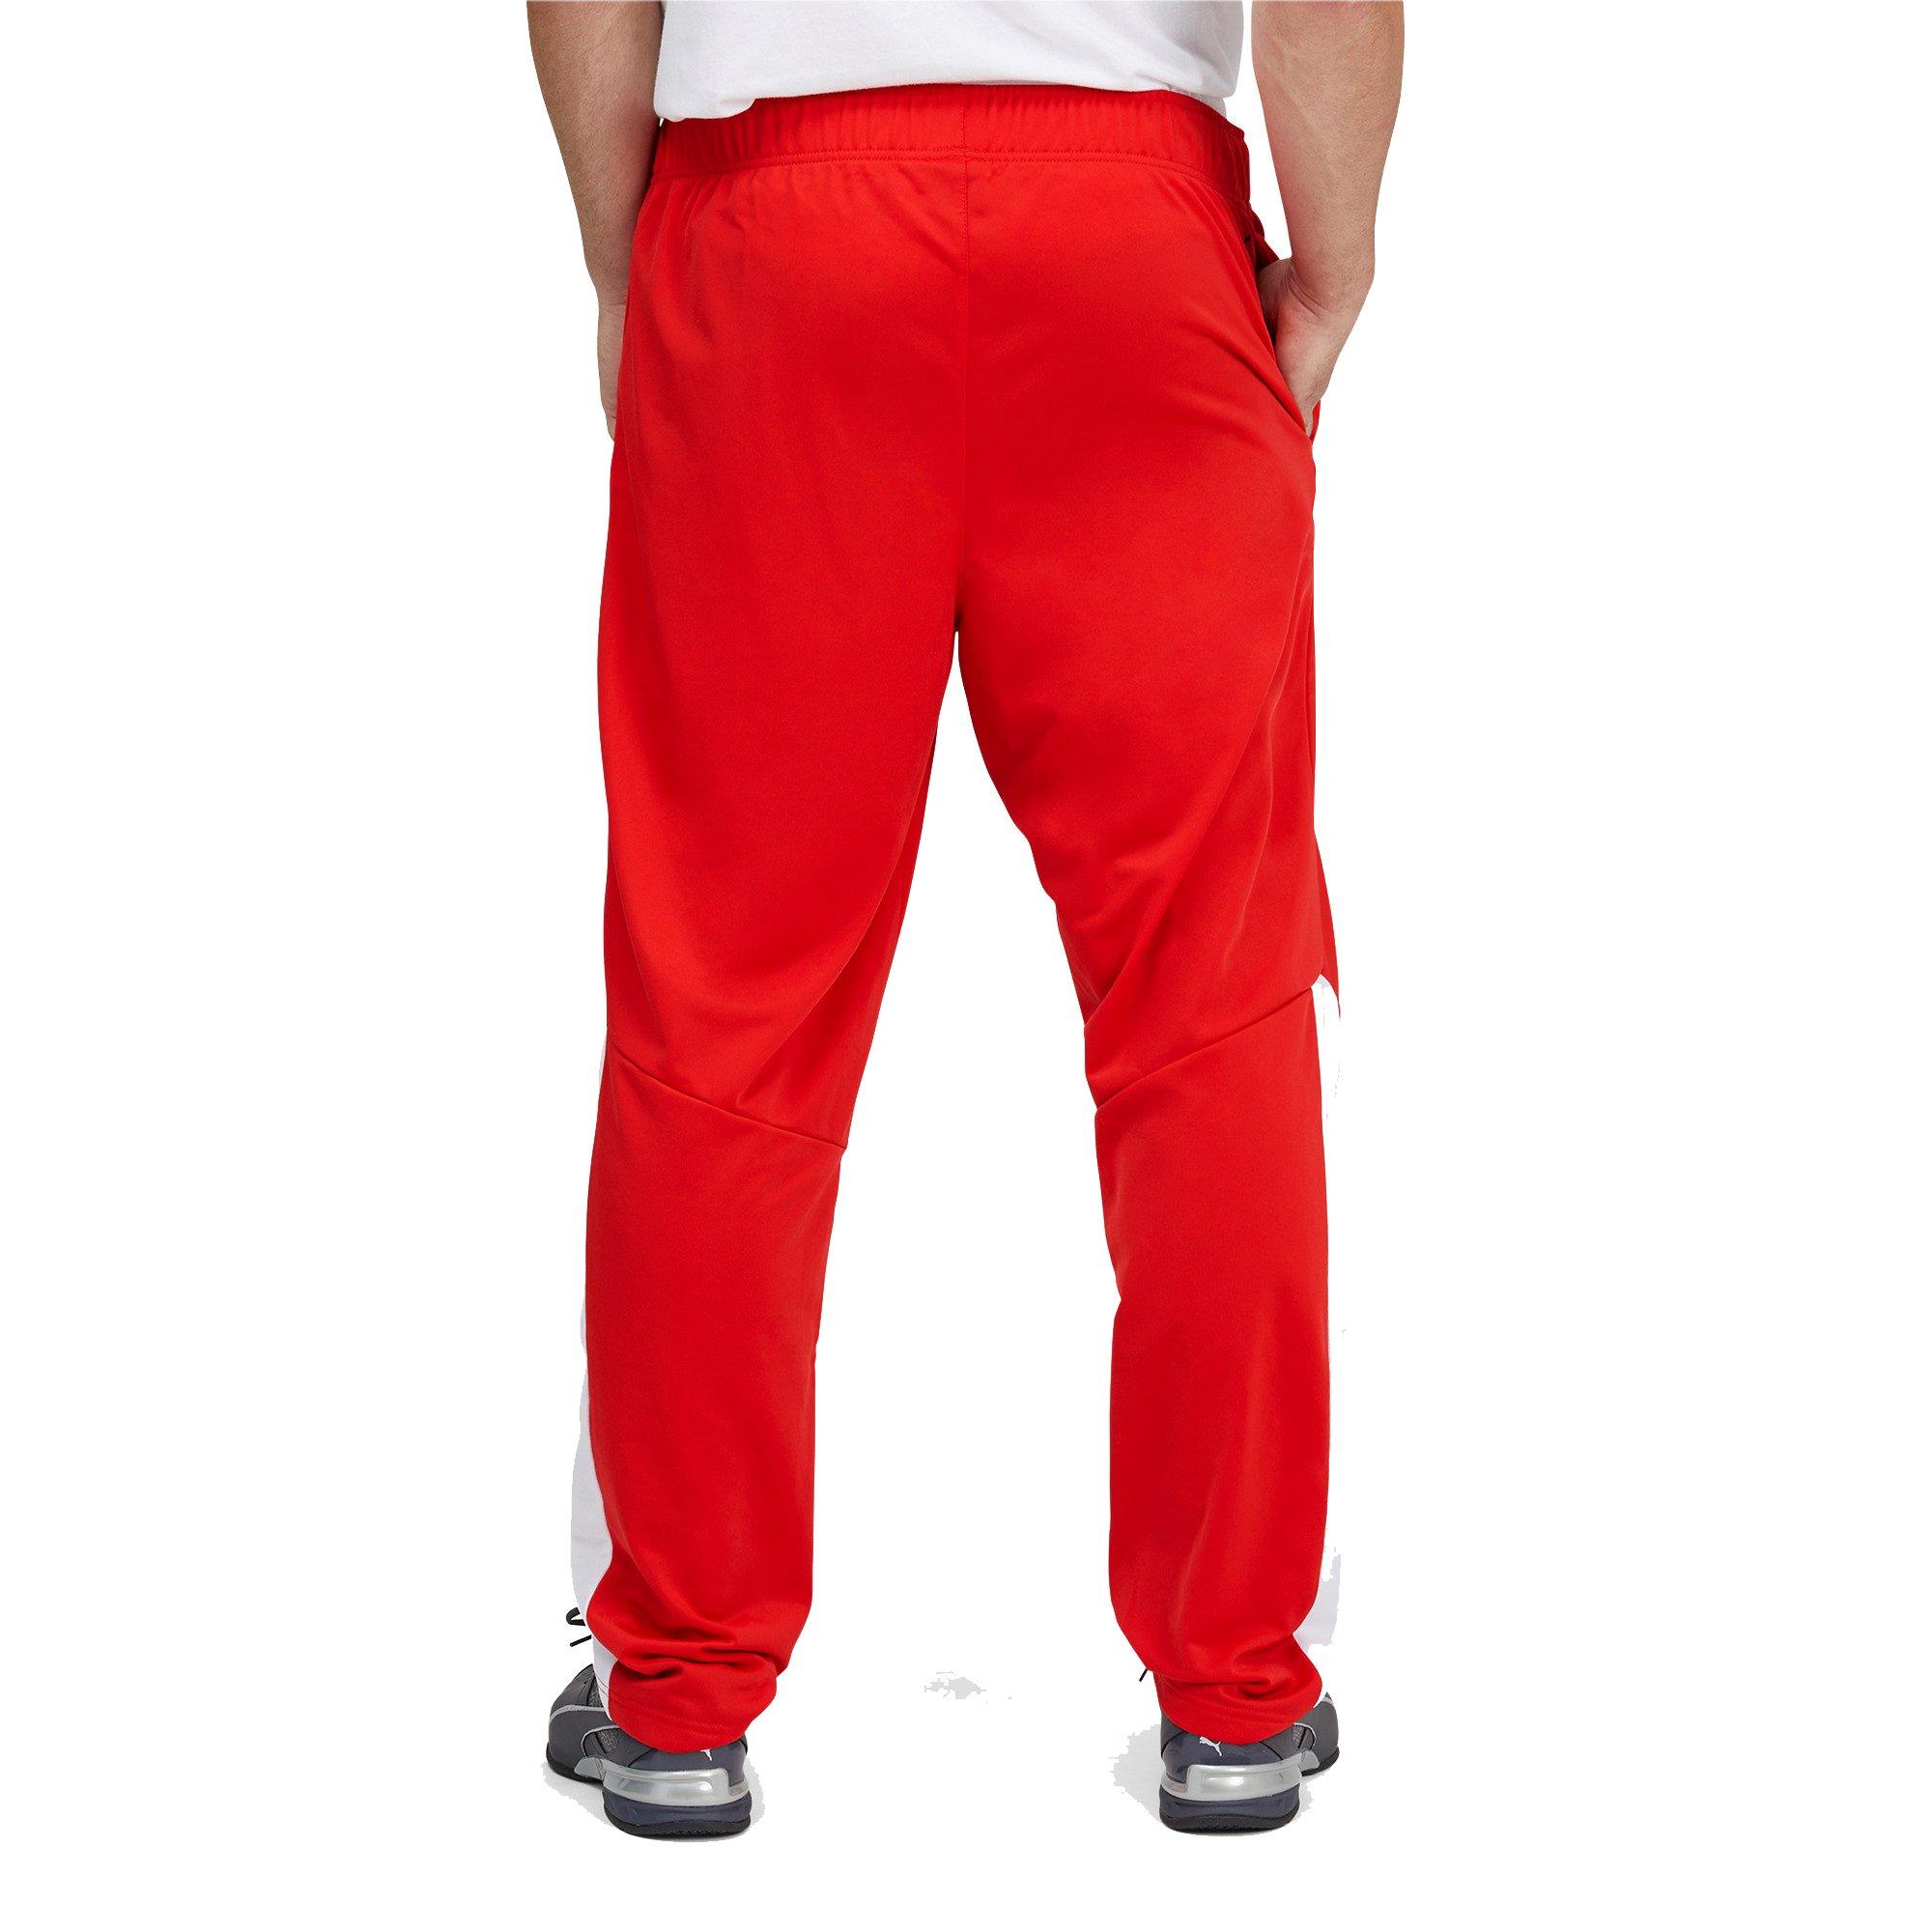 Harmoni Hilsen Kvadrant Puma Men's CB "Red/White" Pants - Big & Tall